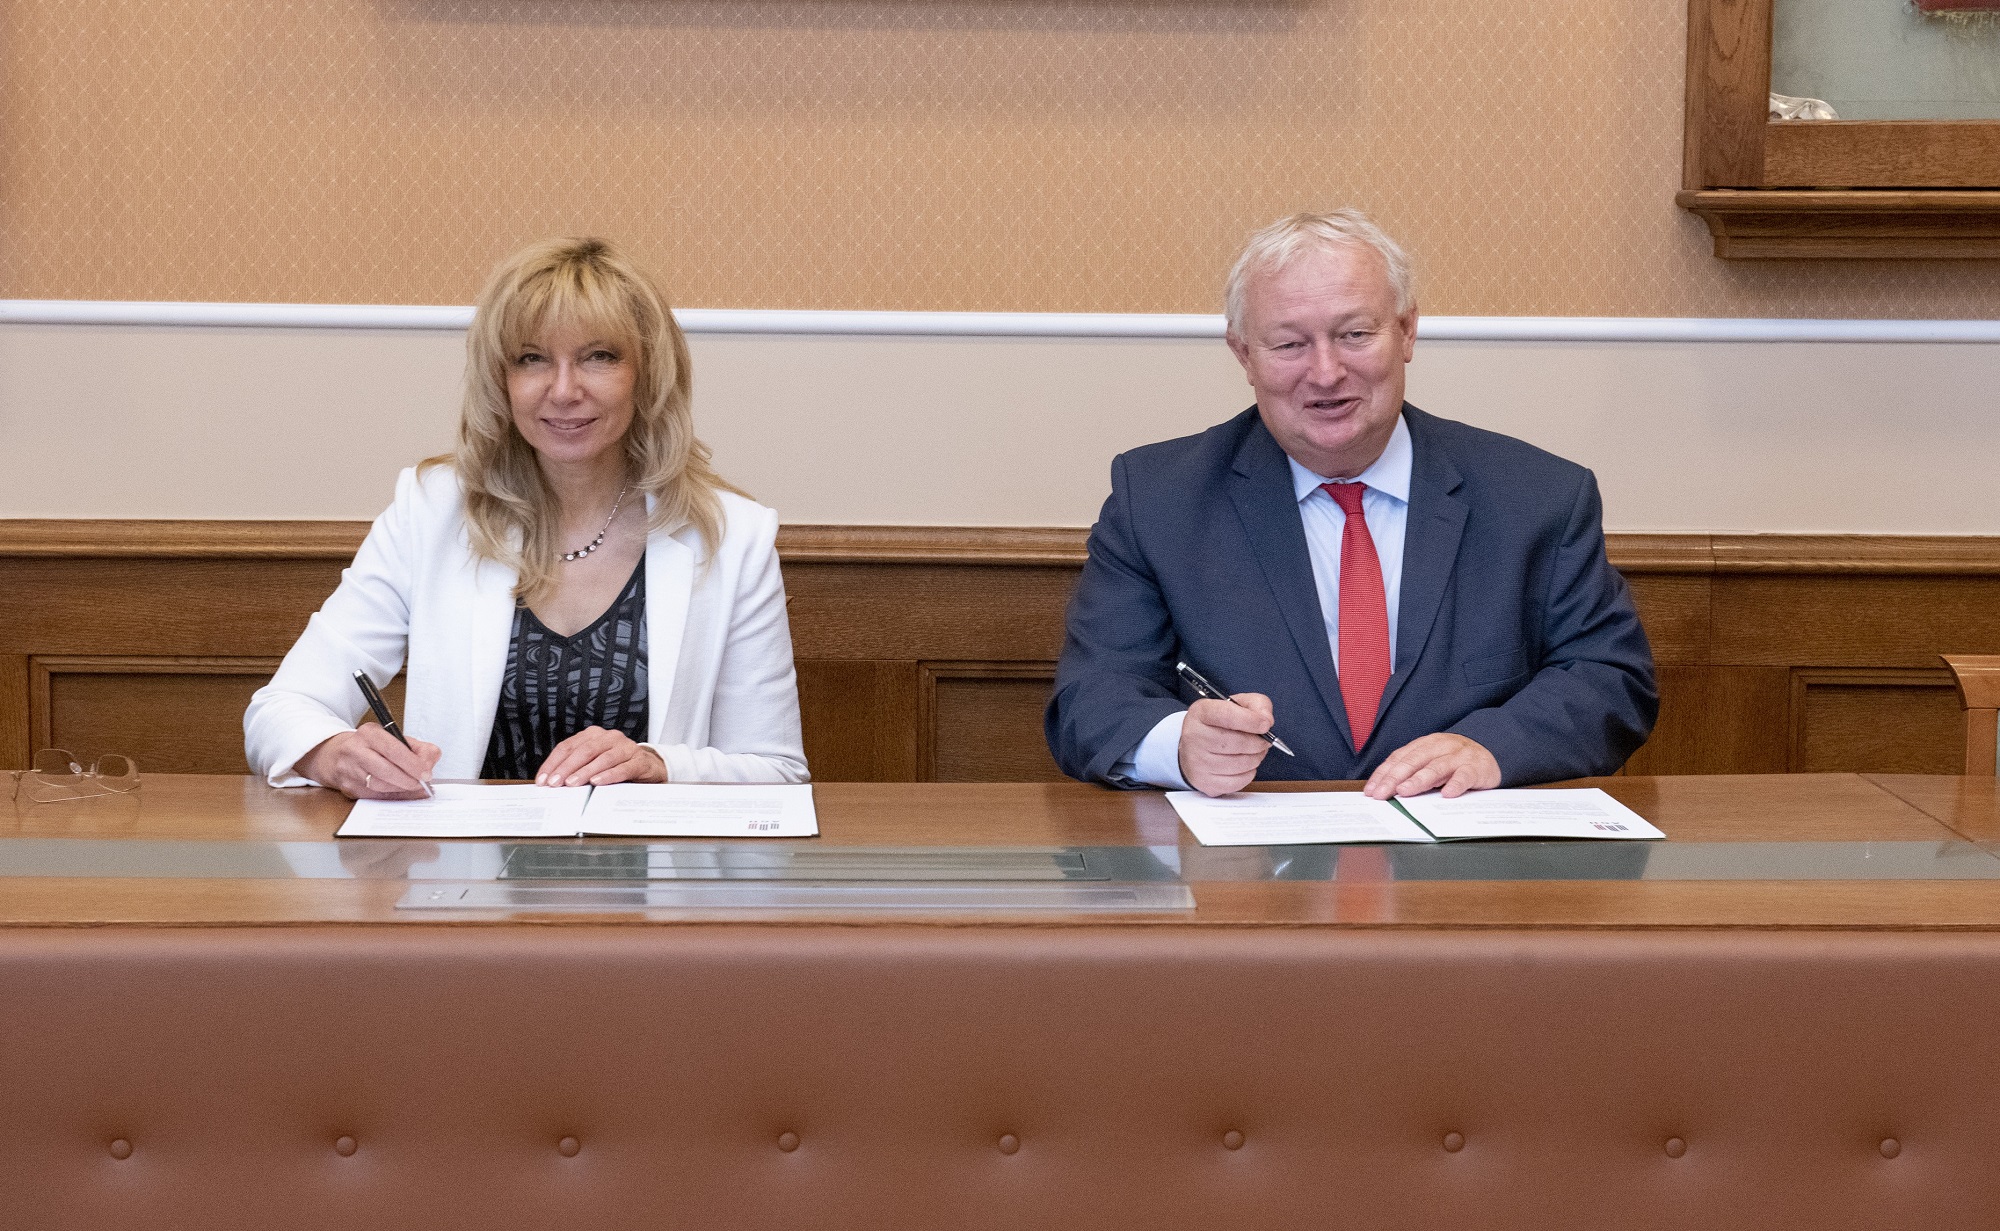 Na zdjęciu sygnatariusze umowy - siedzą za stołem, przed nimi dokumenty z umową, w dłoniach trzymają długopisy. Zdjęcie wykonane w sali konferencyjnej AGH.